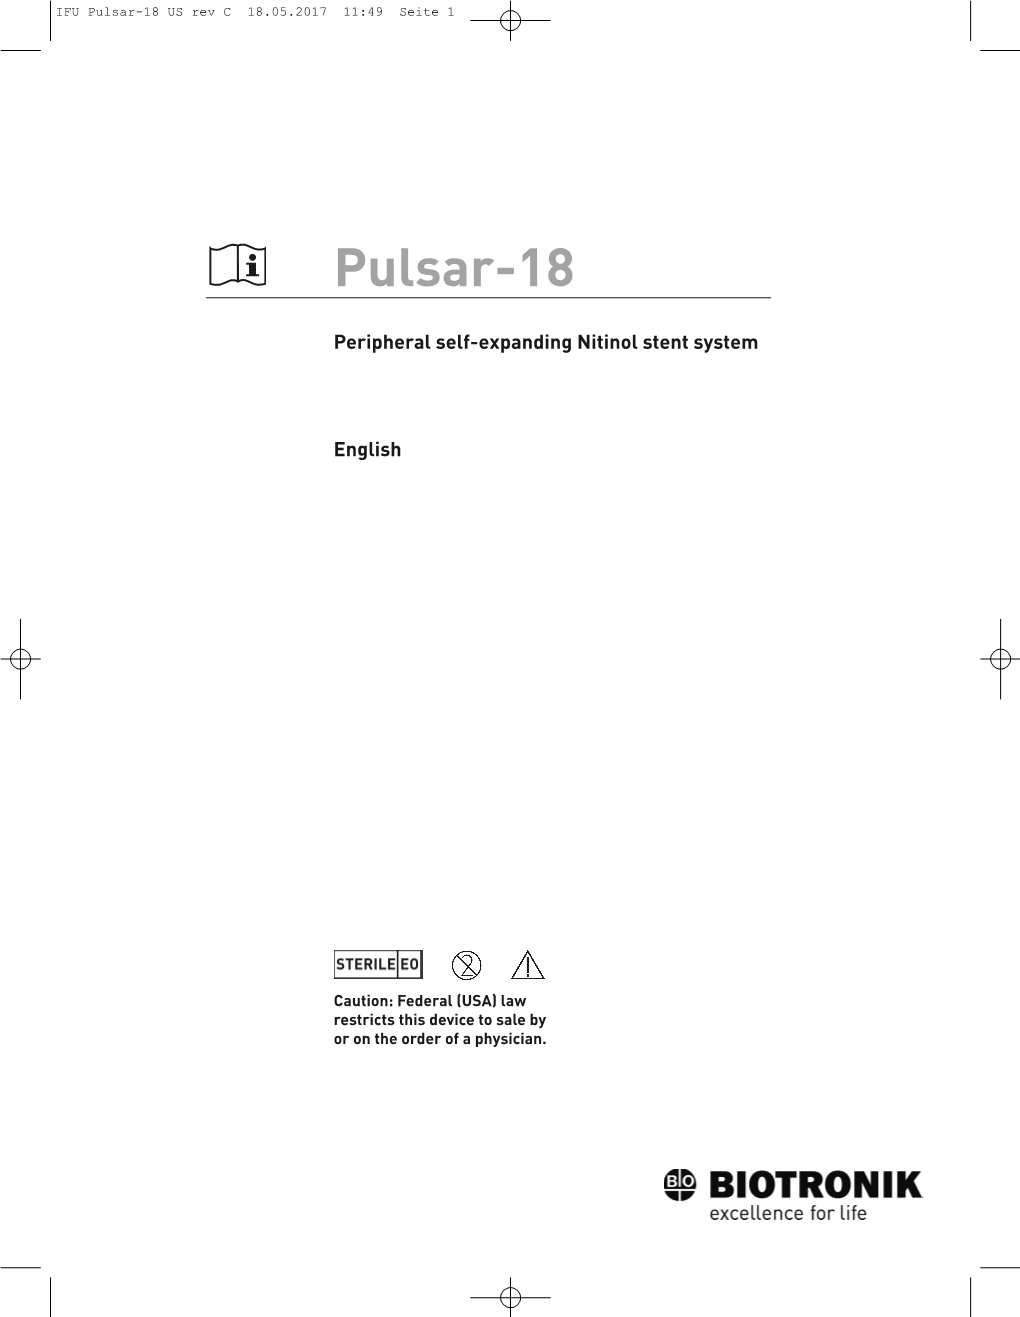 Pulsar-18 US Rev C 18.05.2017 11:49 Seite 1